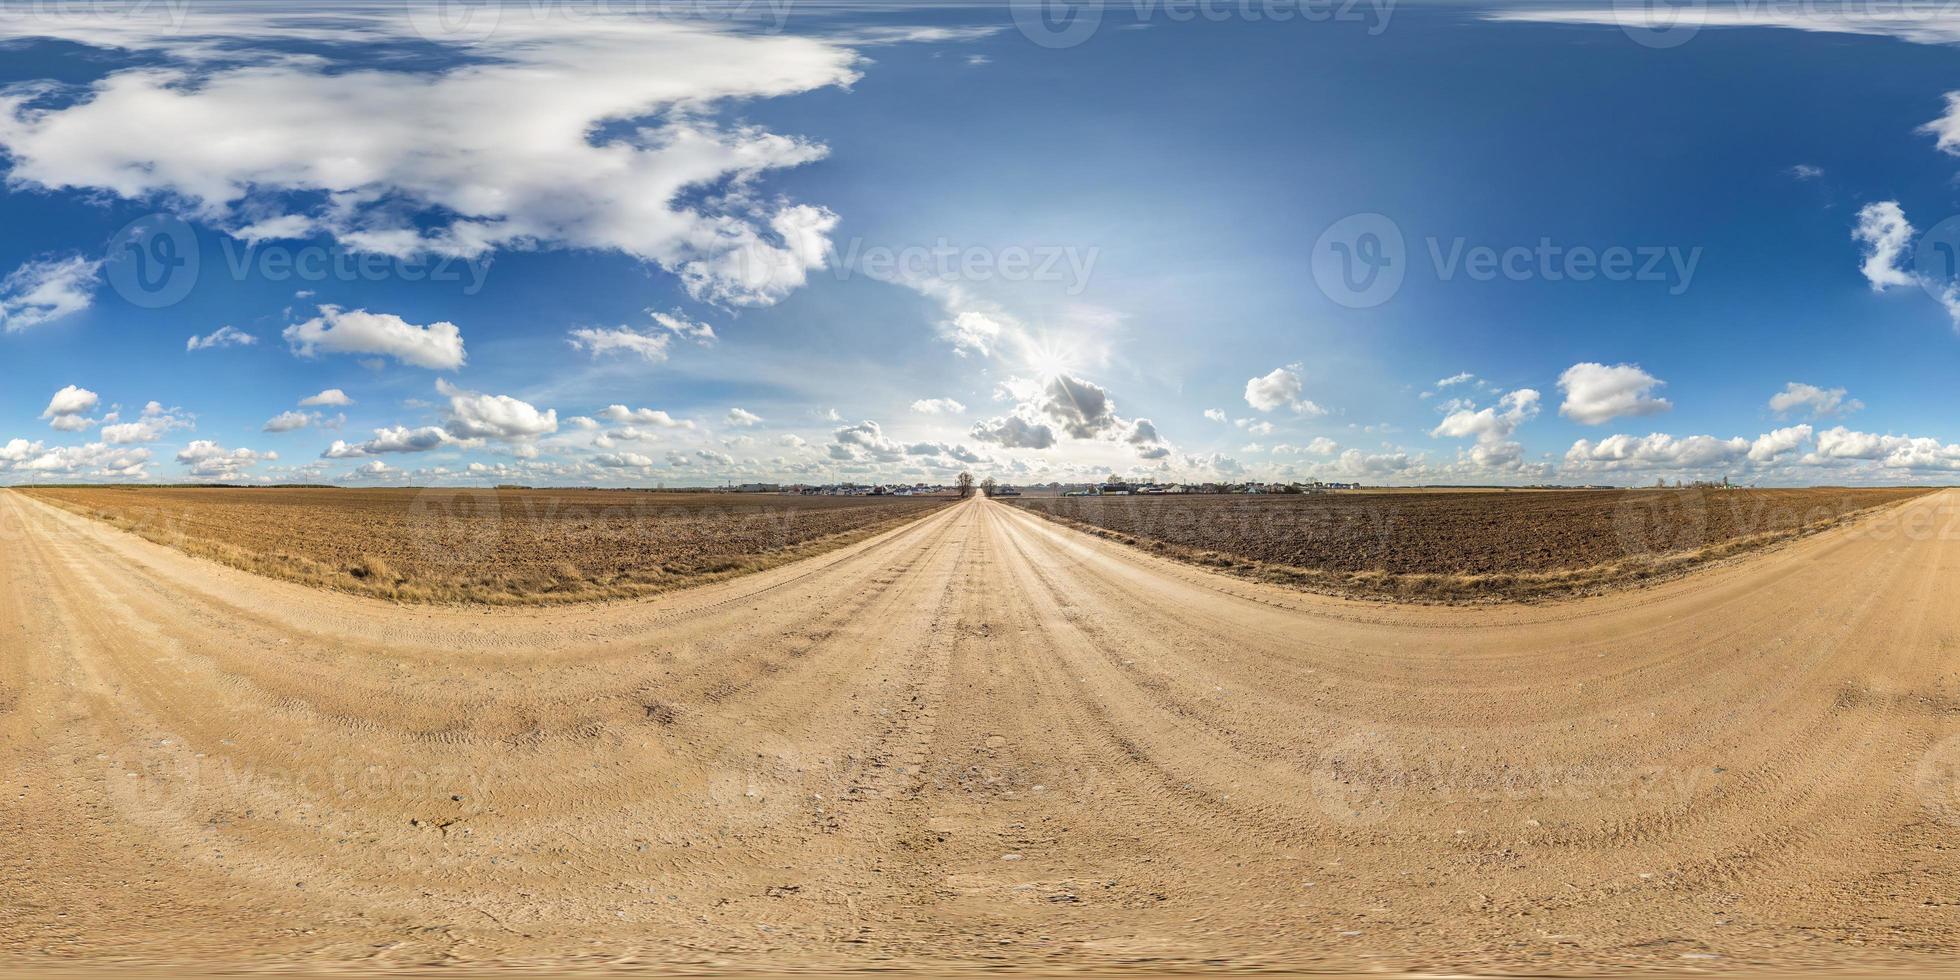 panorama hdri sphérique complet et harmonieux vue à 360 degrés sur la route de gravier parmi les champs au printemps avec des nuages impressionnants en projection équirectangulaire, prêt pour le contenu de réalité virtuelle vr ar photo